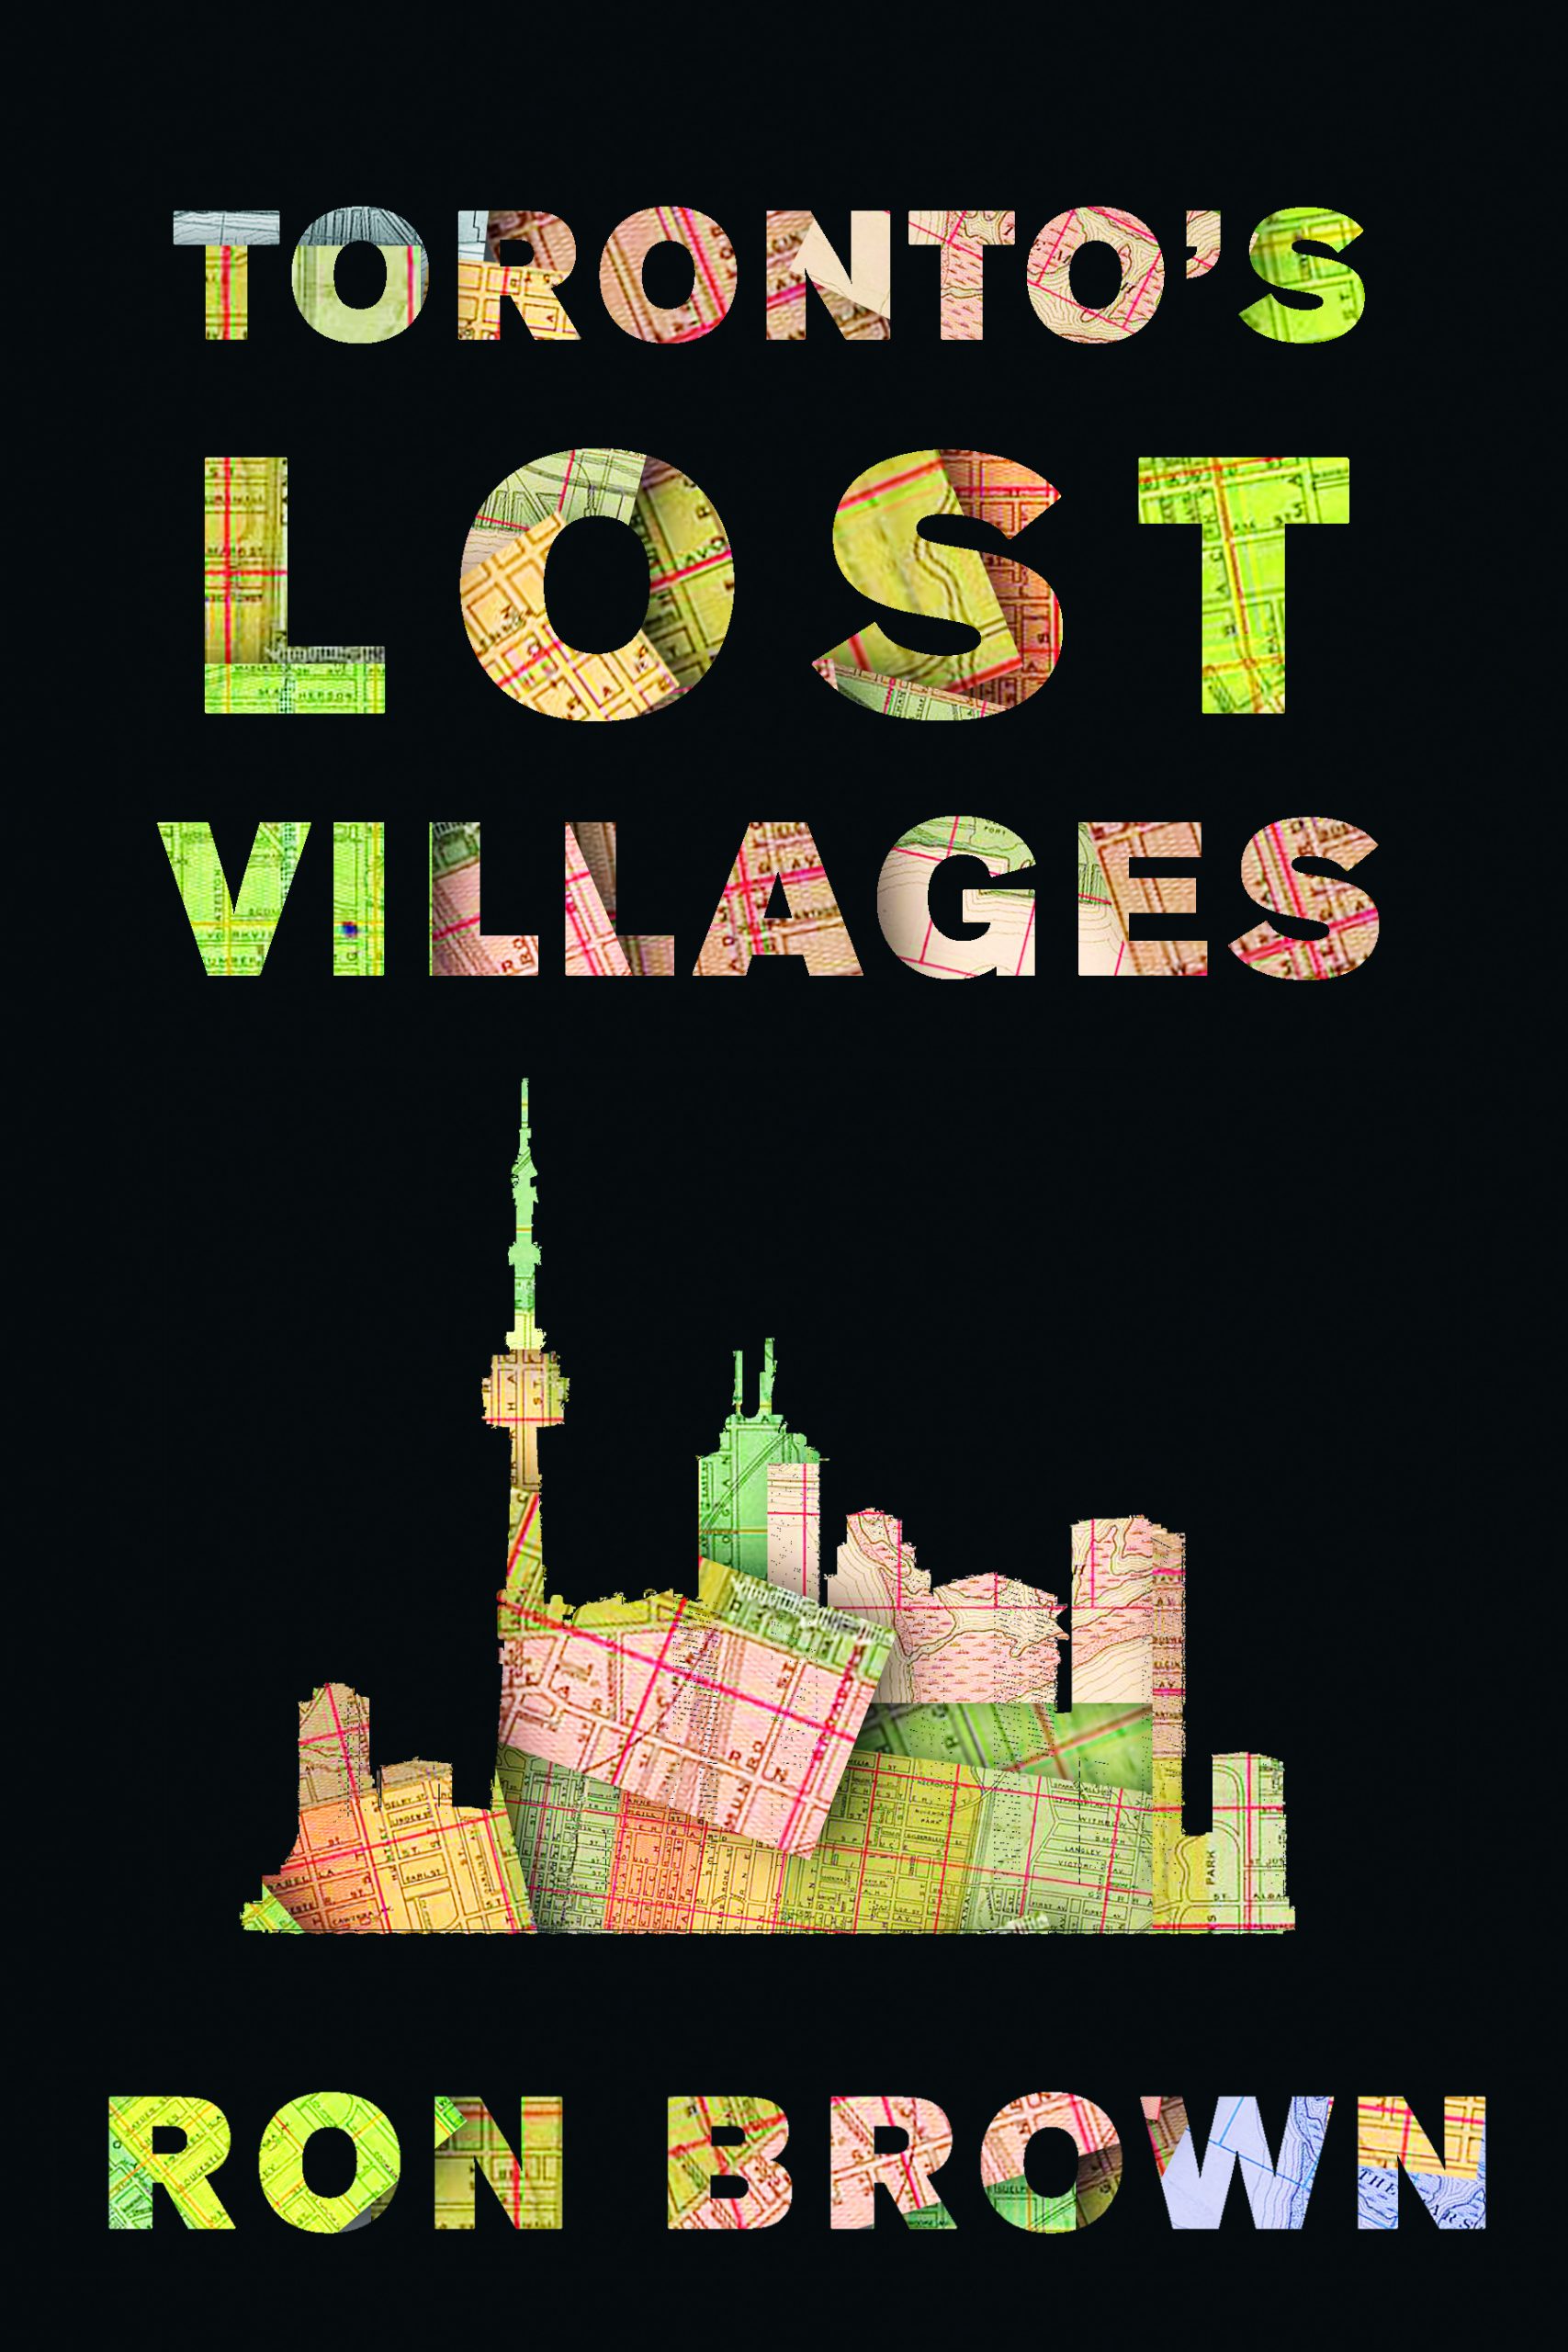 Torontos verlorene Dörfer